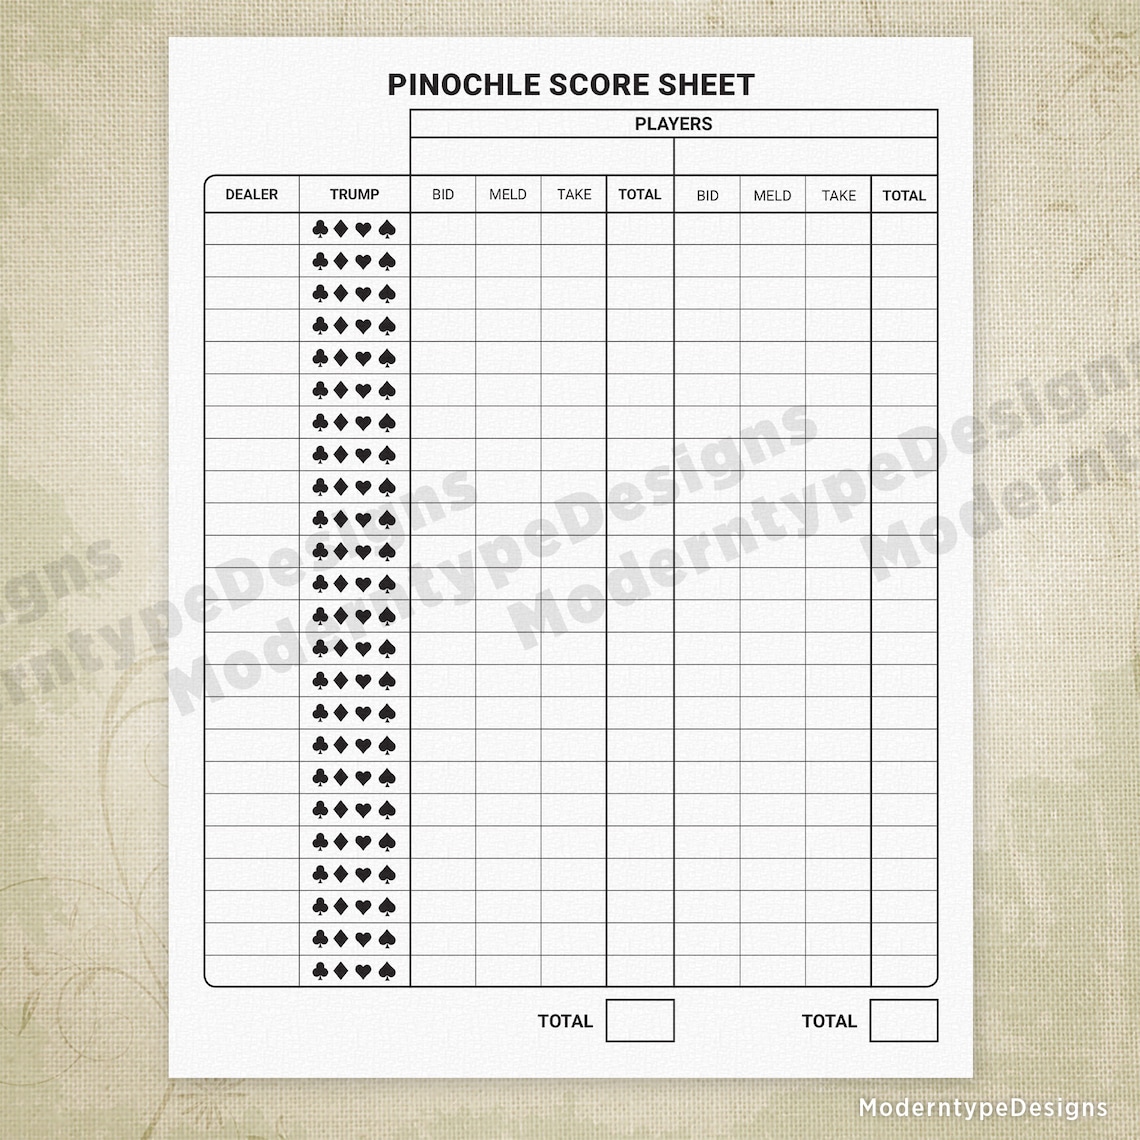 5 handed pinochle score sheet